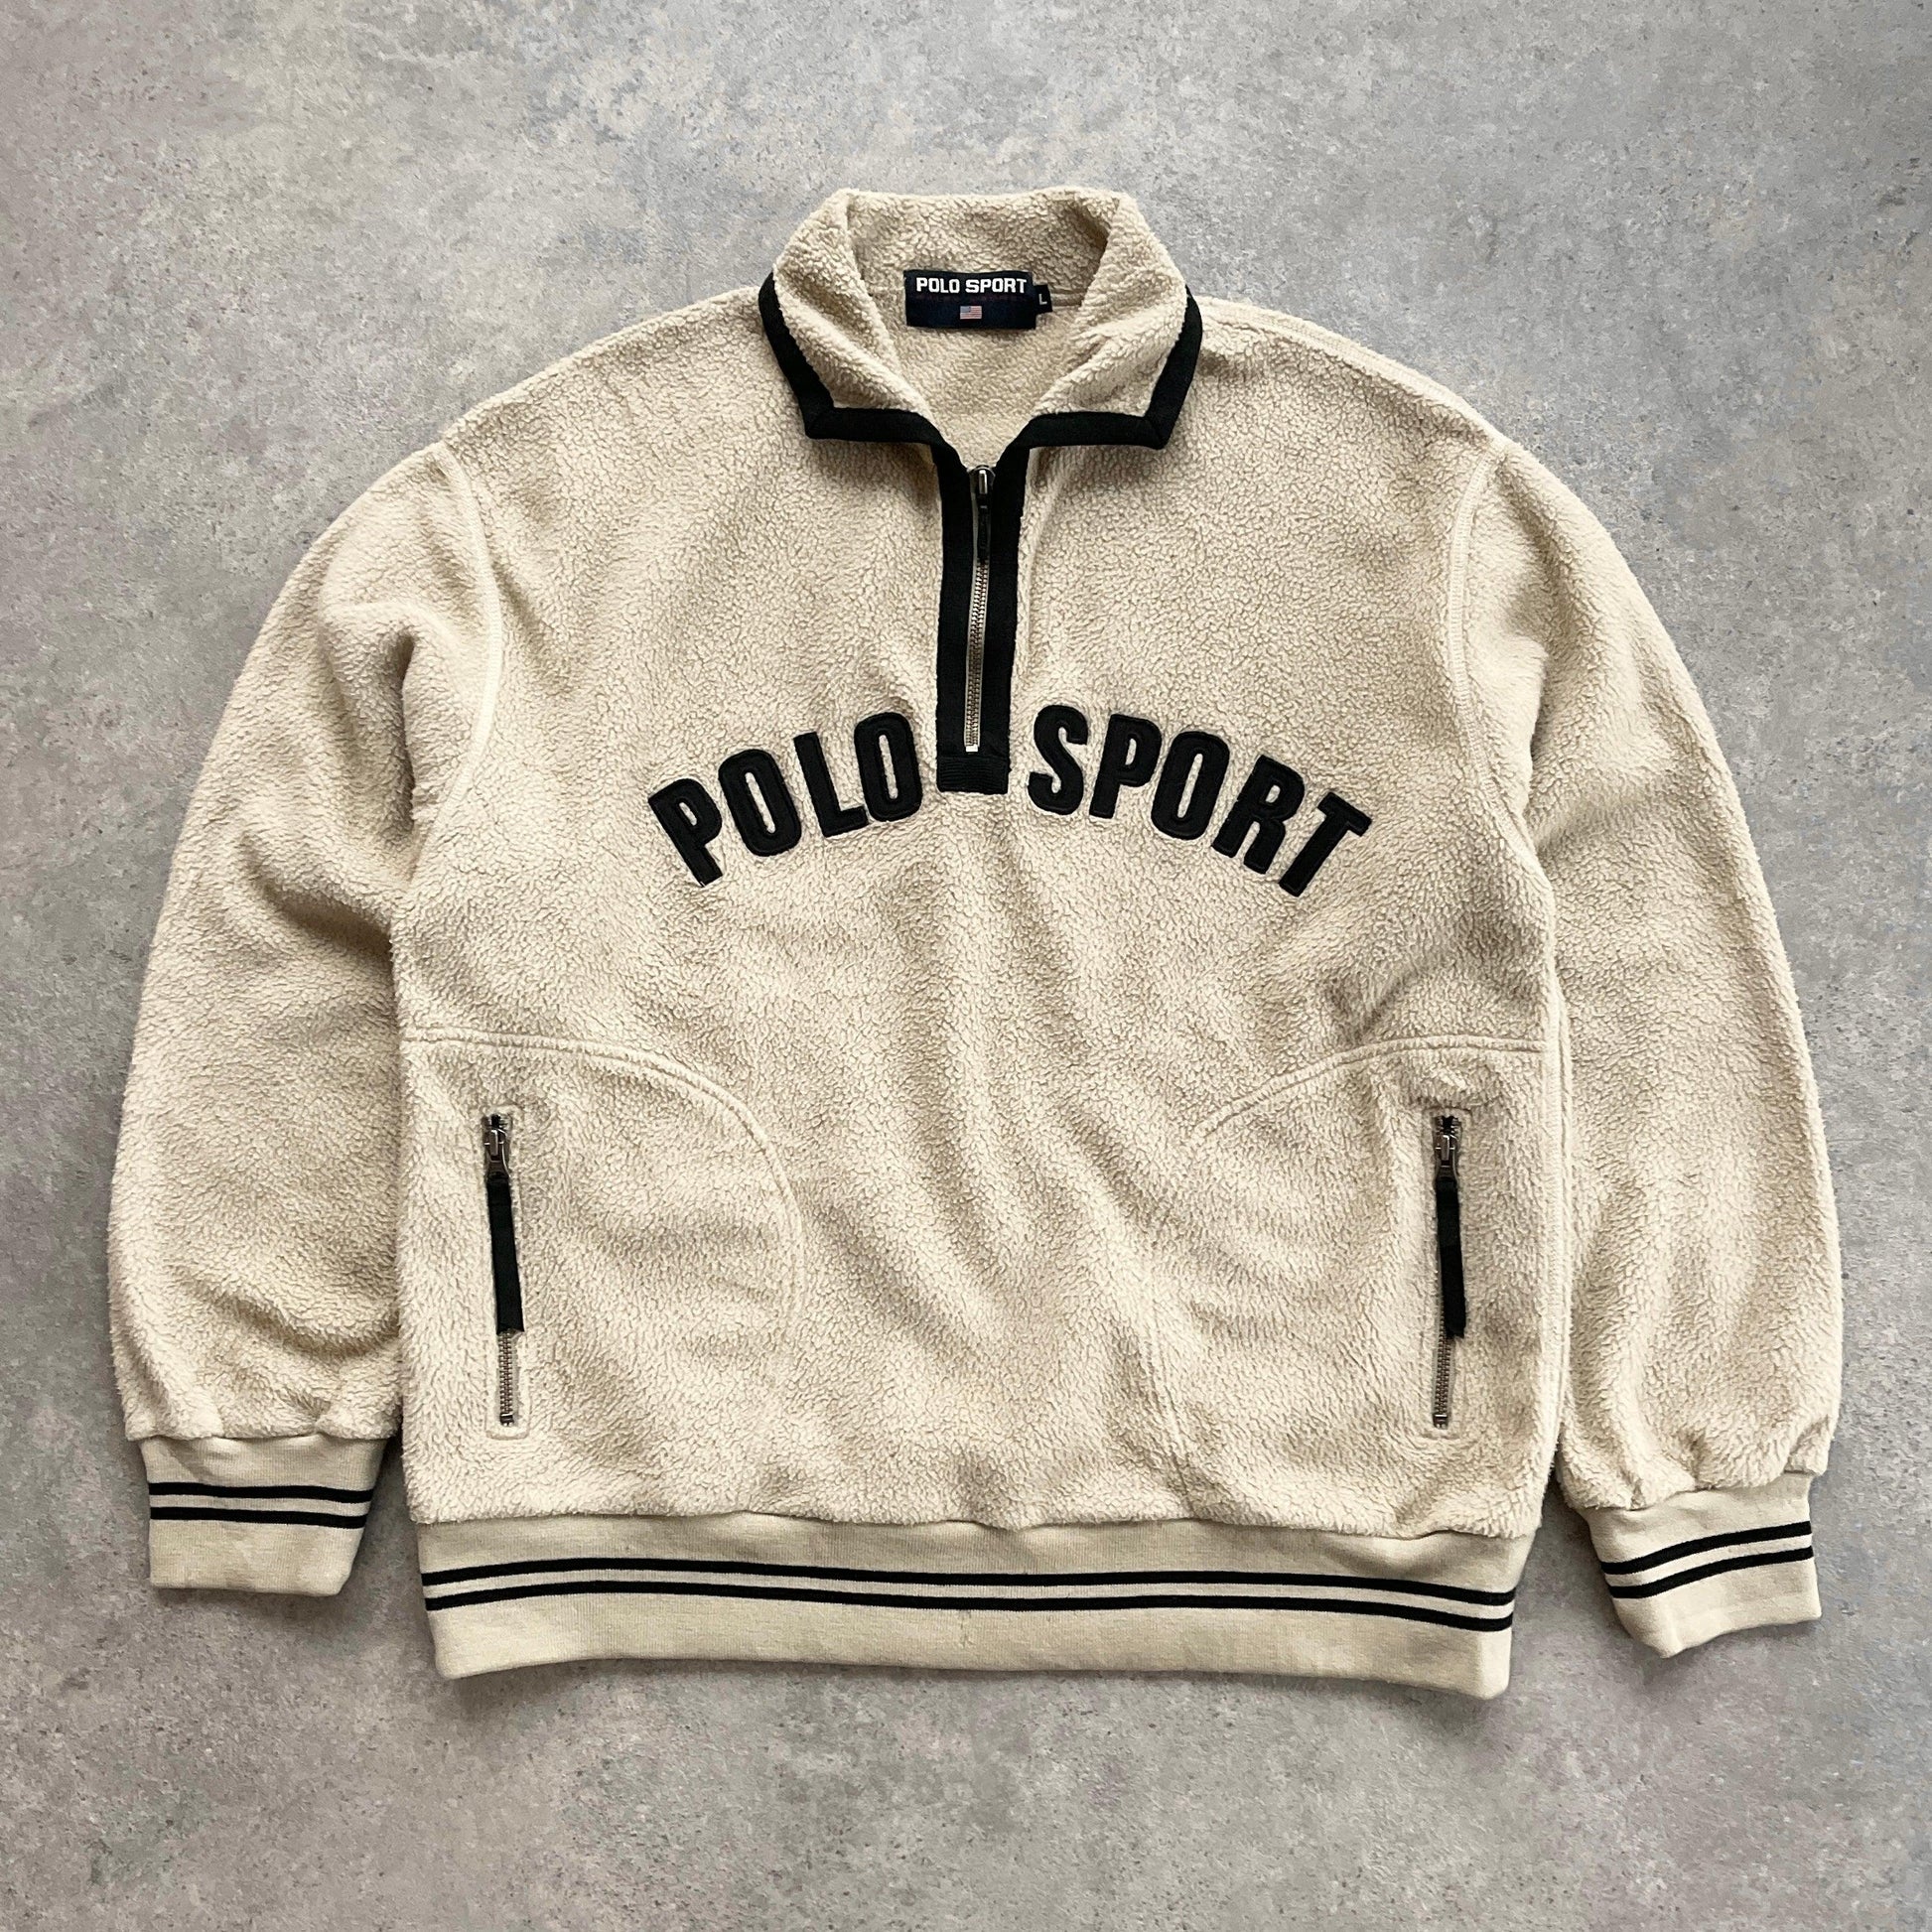 Polo Sport Ralph Lauren RARE 1990s heavyweight 1/4 zip fleece (L) - Known Source